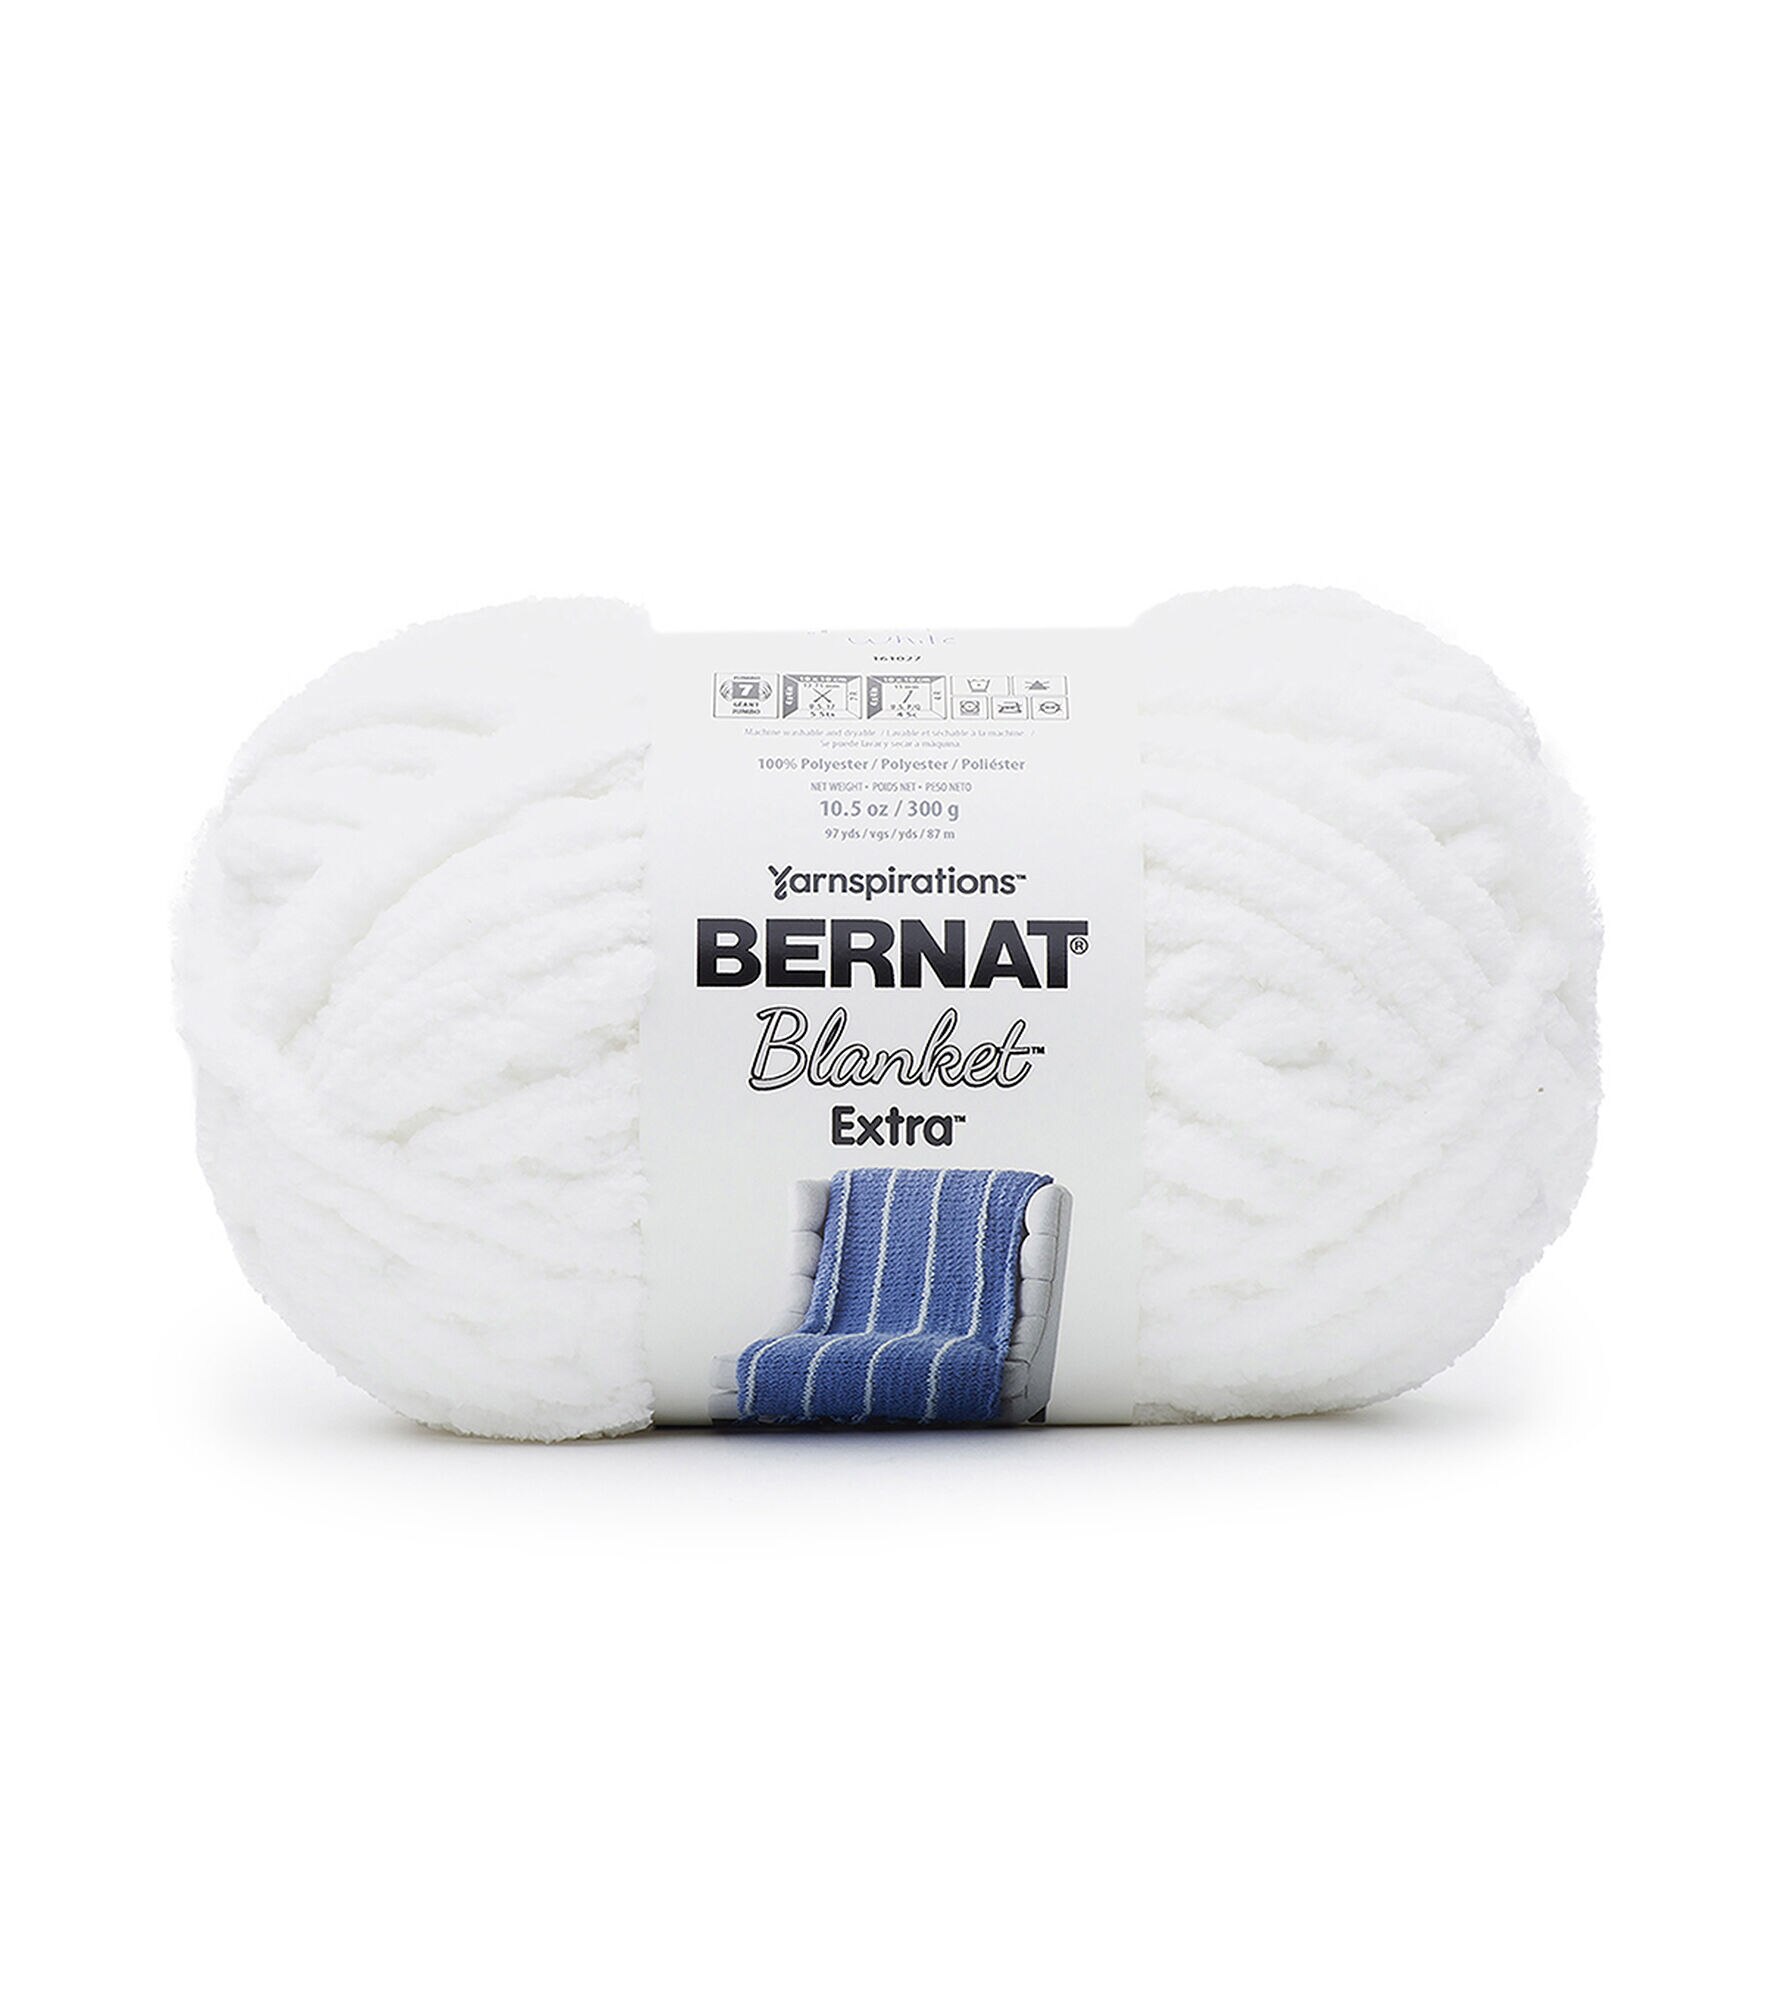 Bernat Blanket Extra Yarn Mushroom